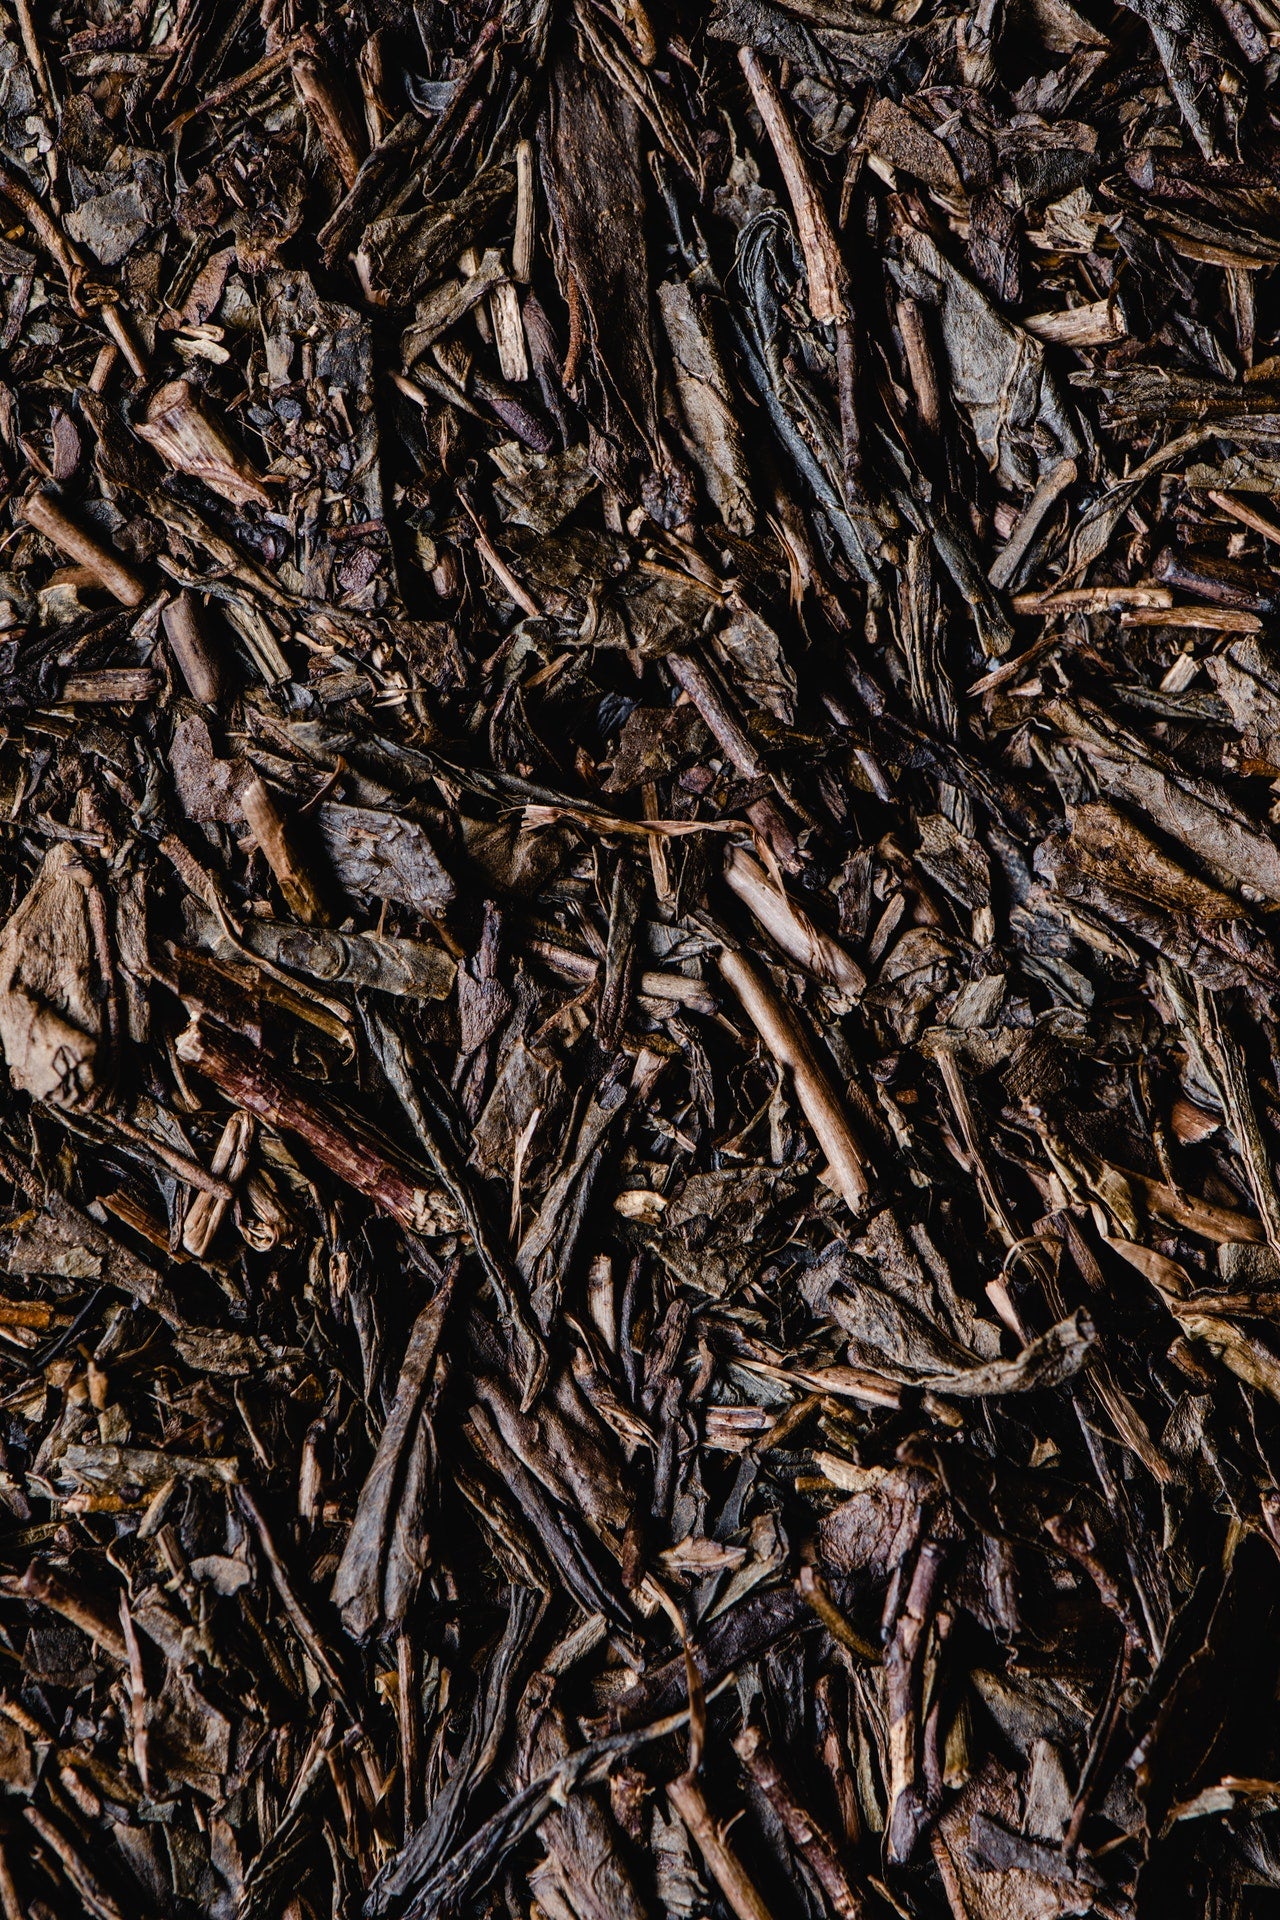 Tea Leaves for blending